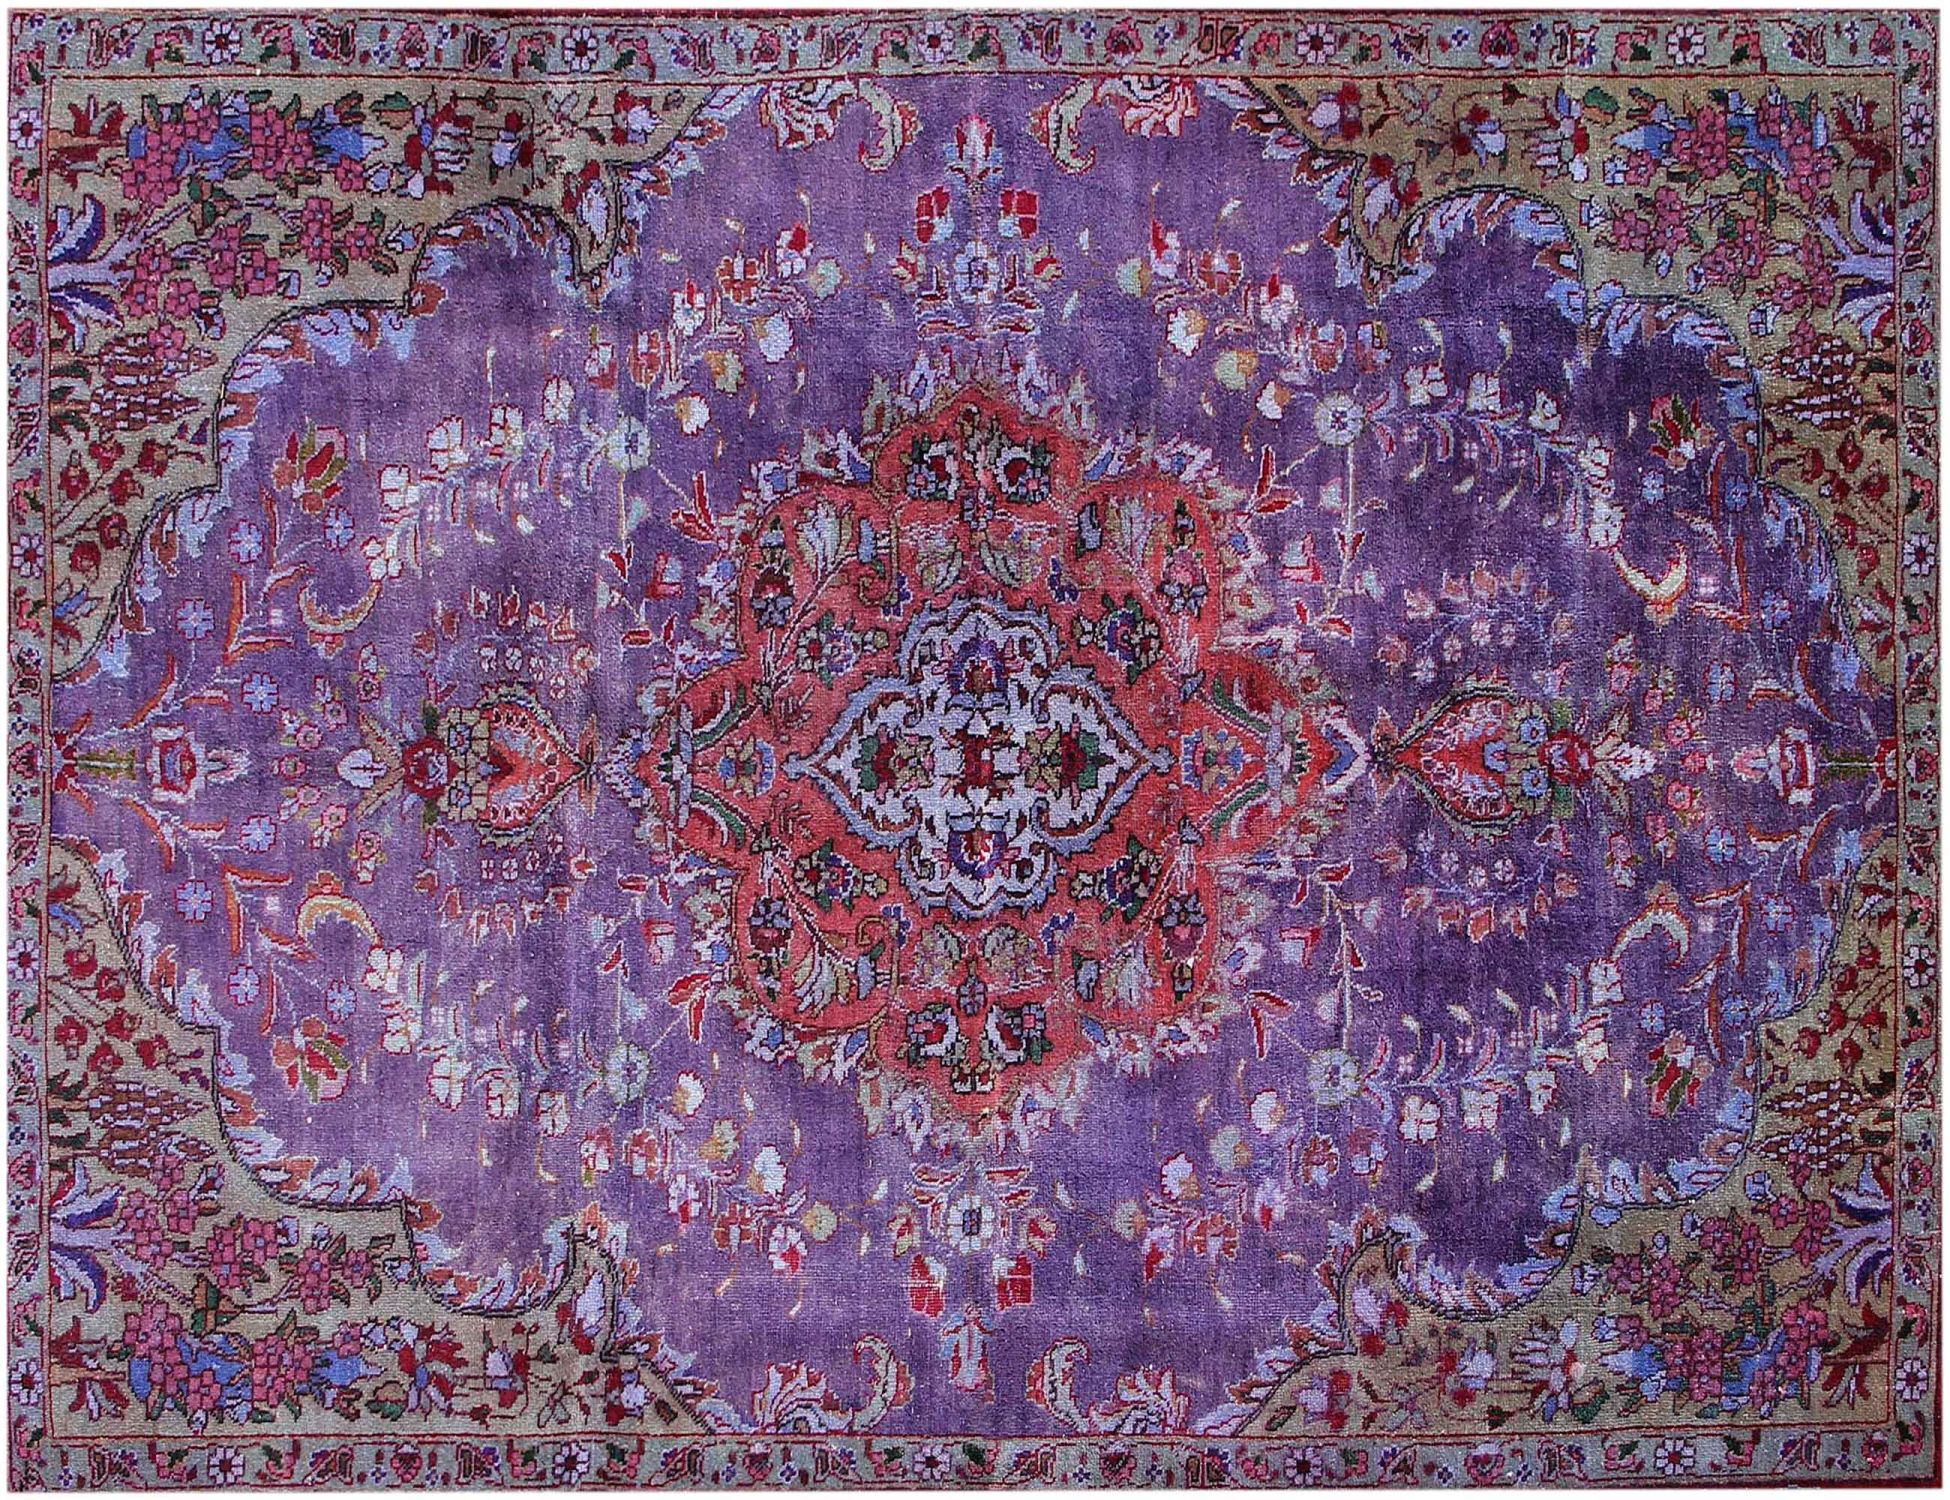 Persischer Vintage Teppich  lila <br/>247 x 152 cm